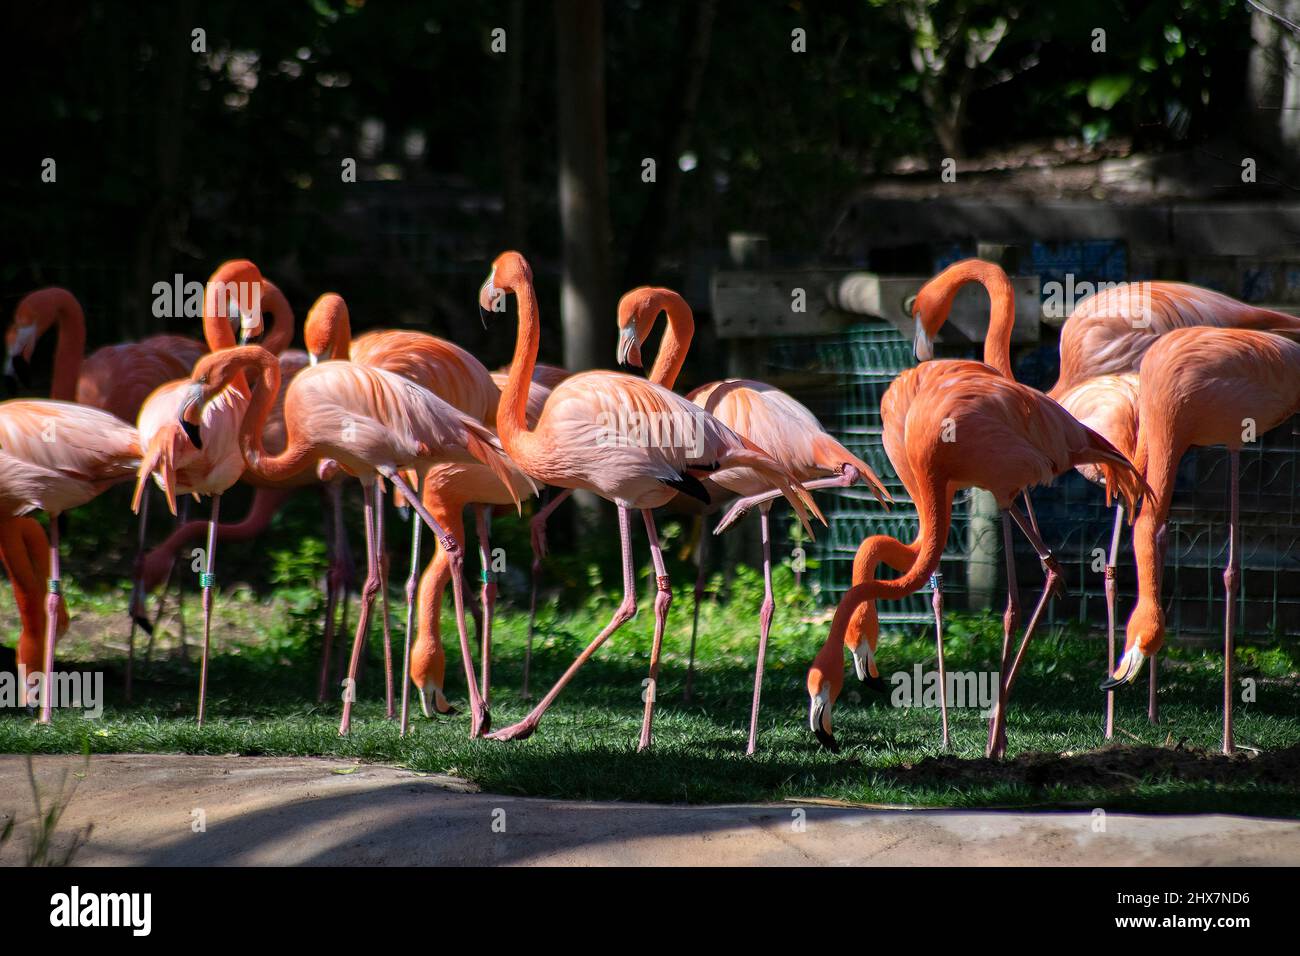 Un groupe de Flamingos, Phoenicoptériformes. Flamants roses. Banque D'Images